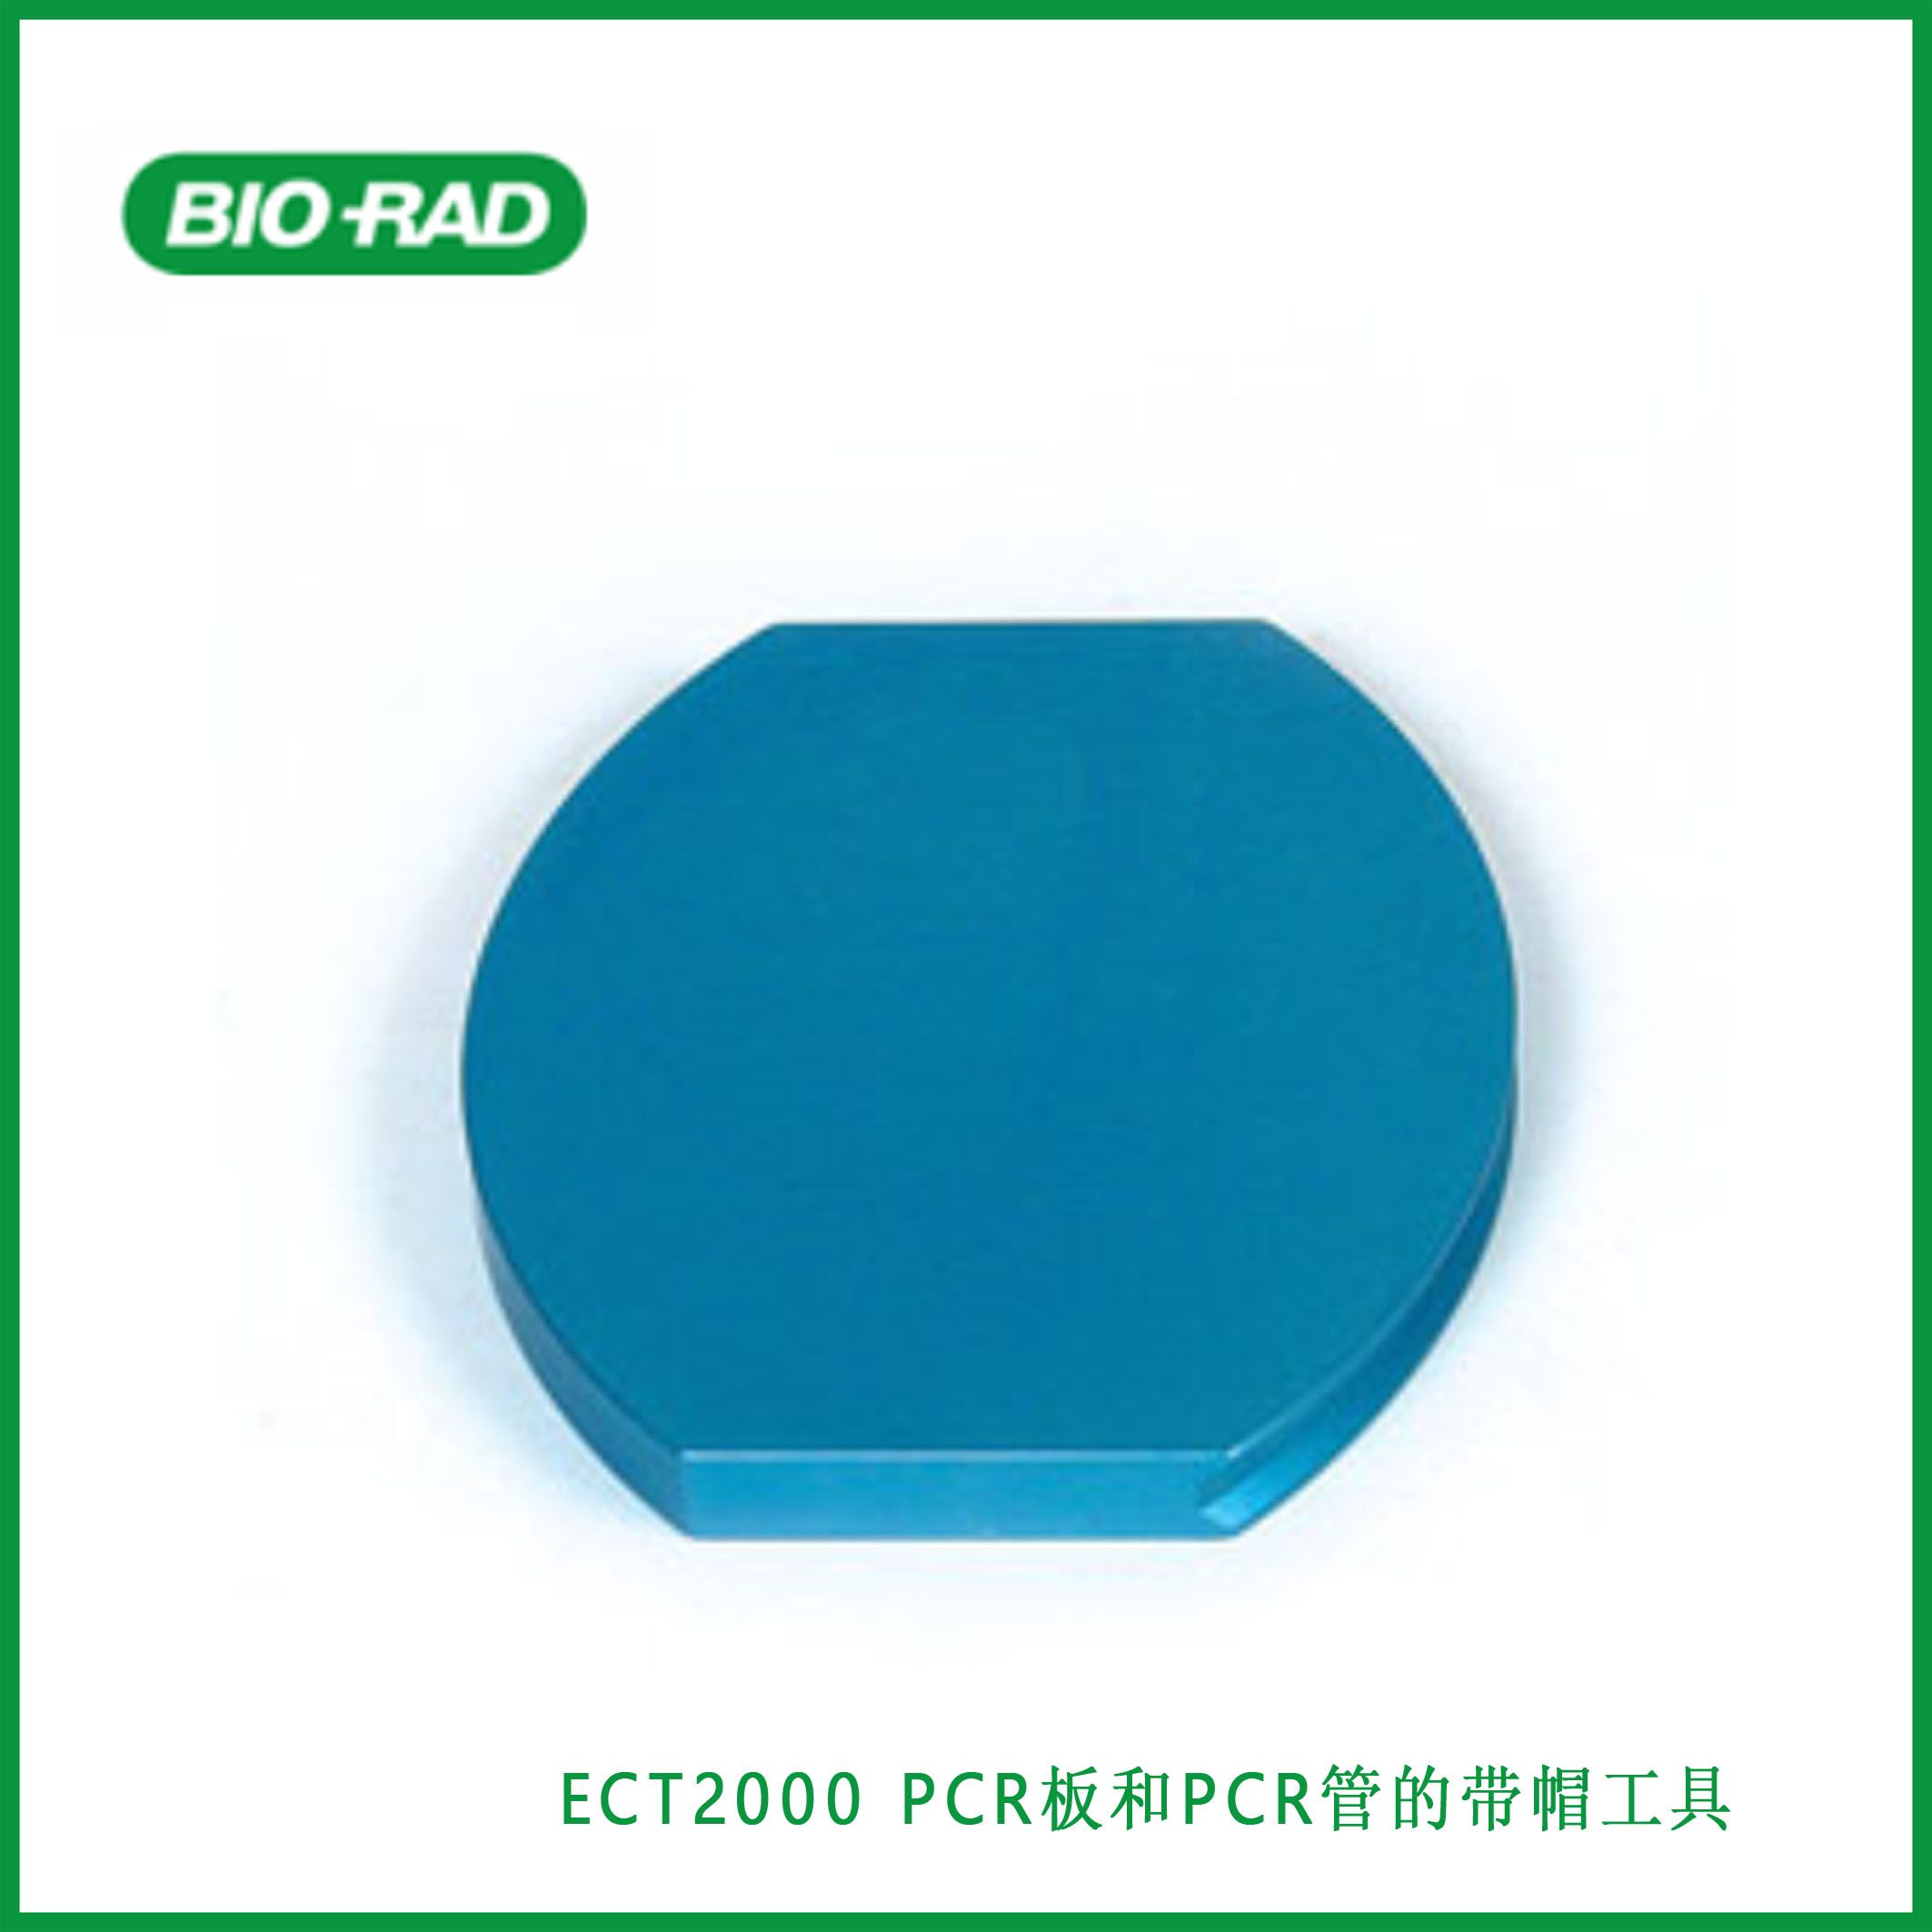 伯乐Bio-RadECT2000 Strip Cap Tool for PCR Plates and PCR Tubes, PCR板和PCR管的带帽工具，现货